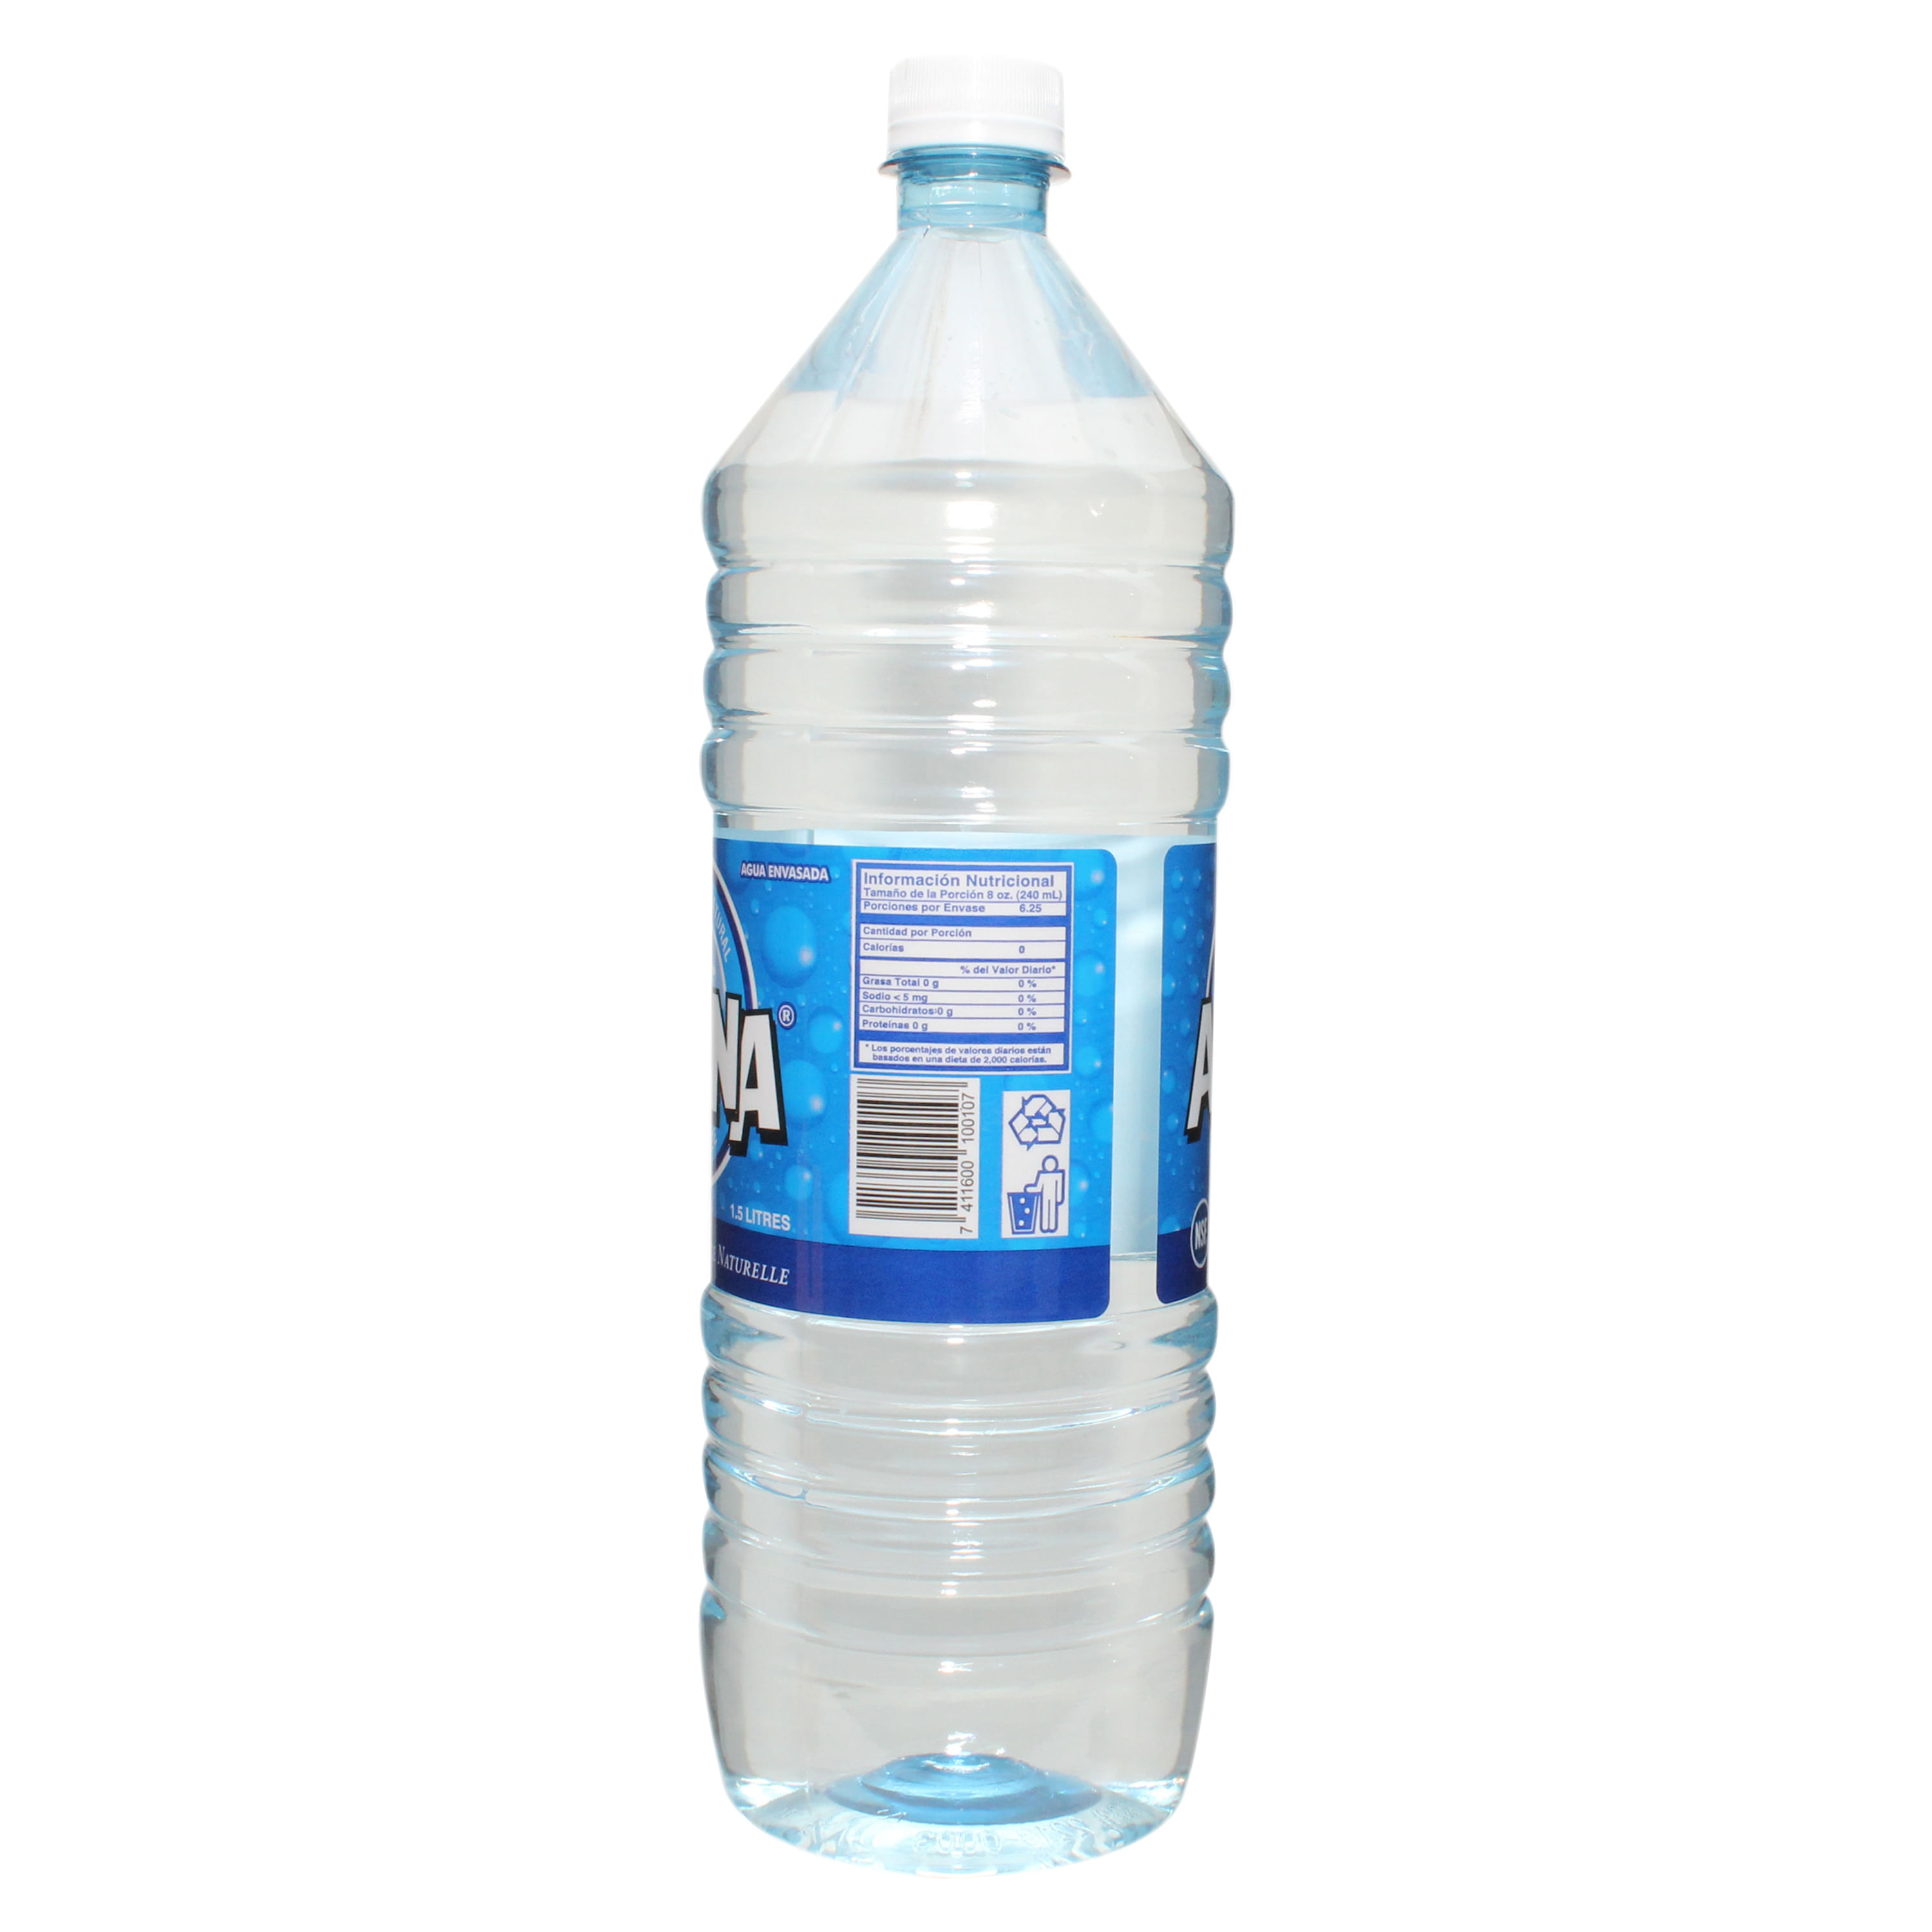 Comprar Agua Alpina Classica 1.5.Litro